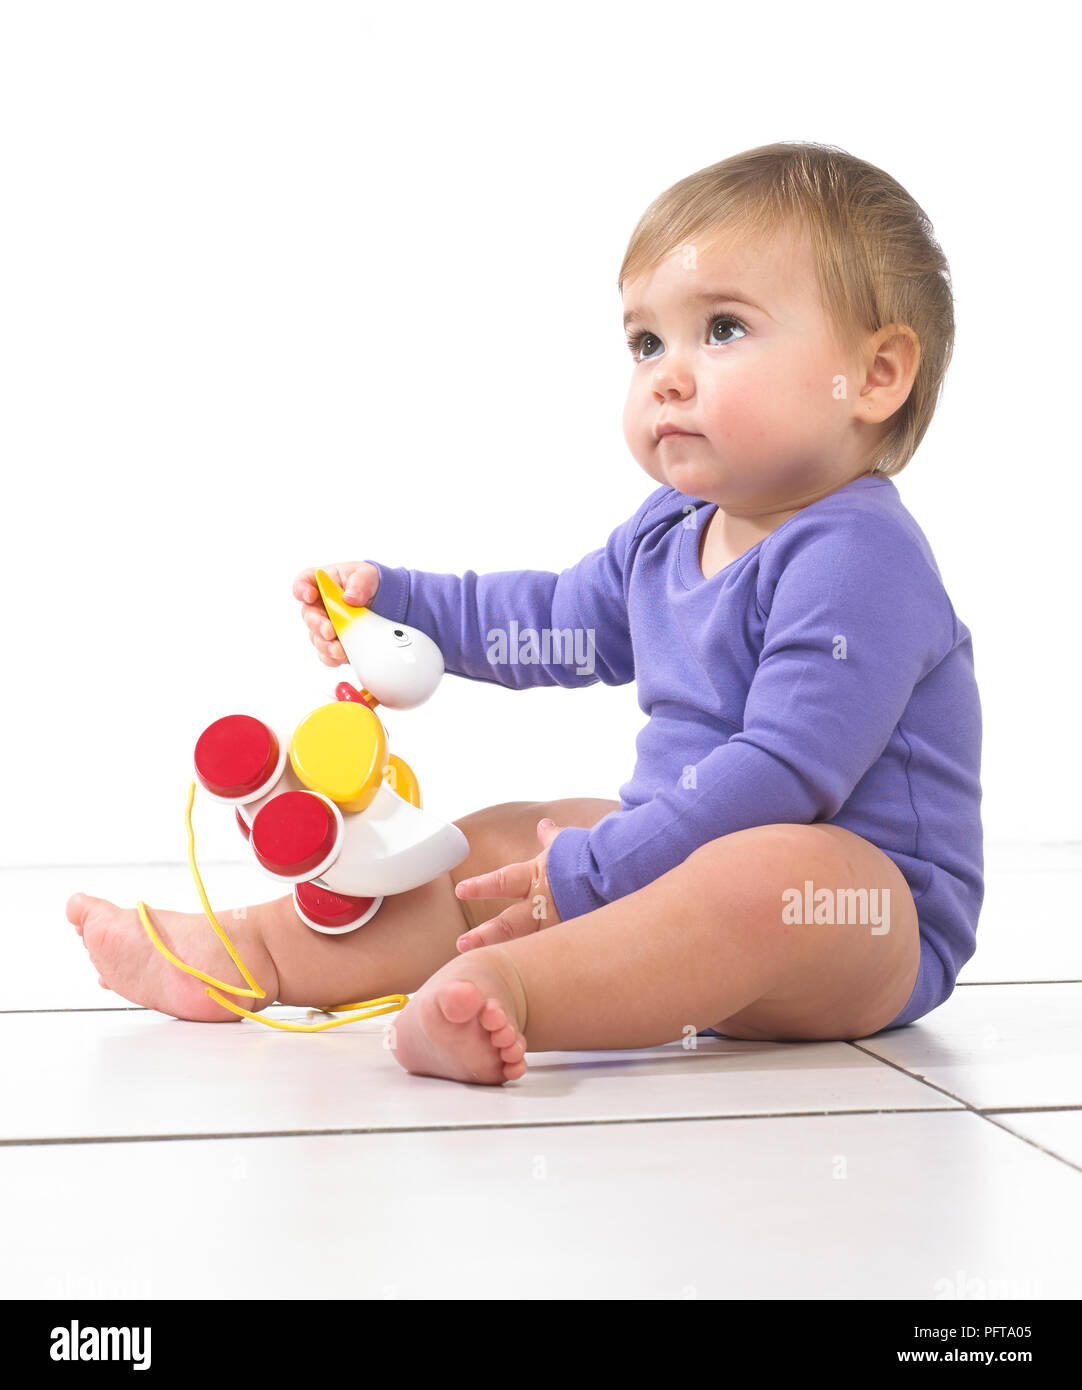 Baby ragazza seduta a giocare con tirare lungo toy duck, dodici mesi Foto Stock